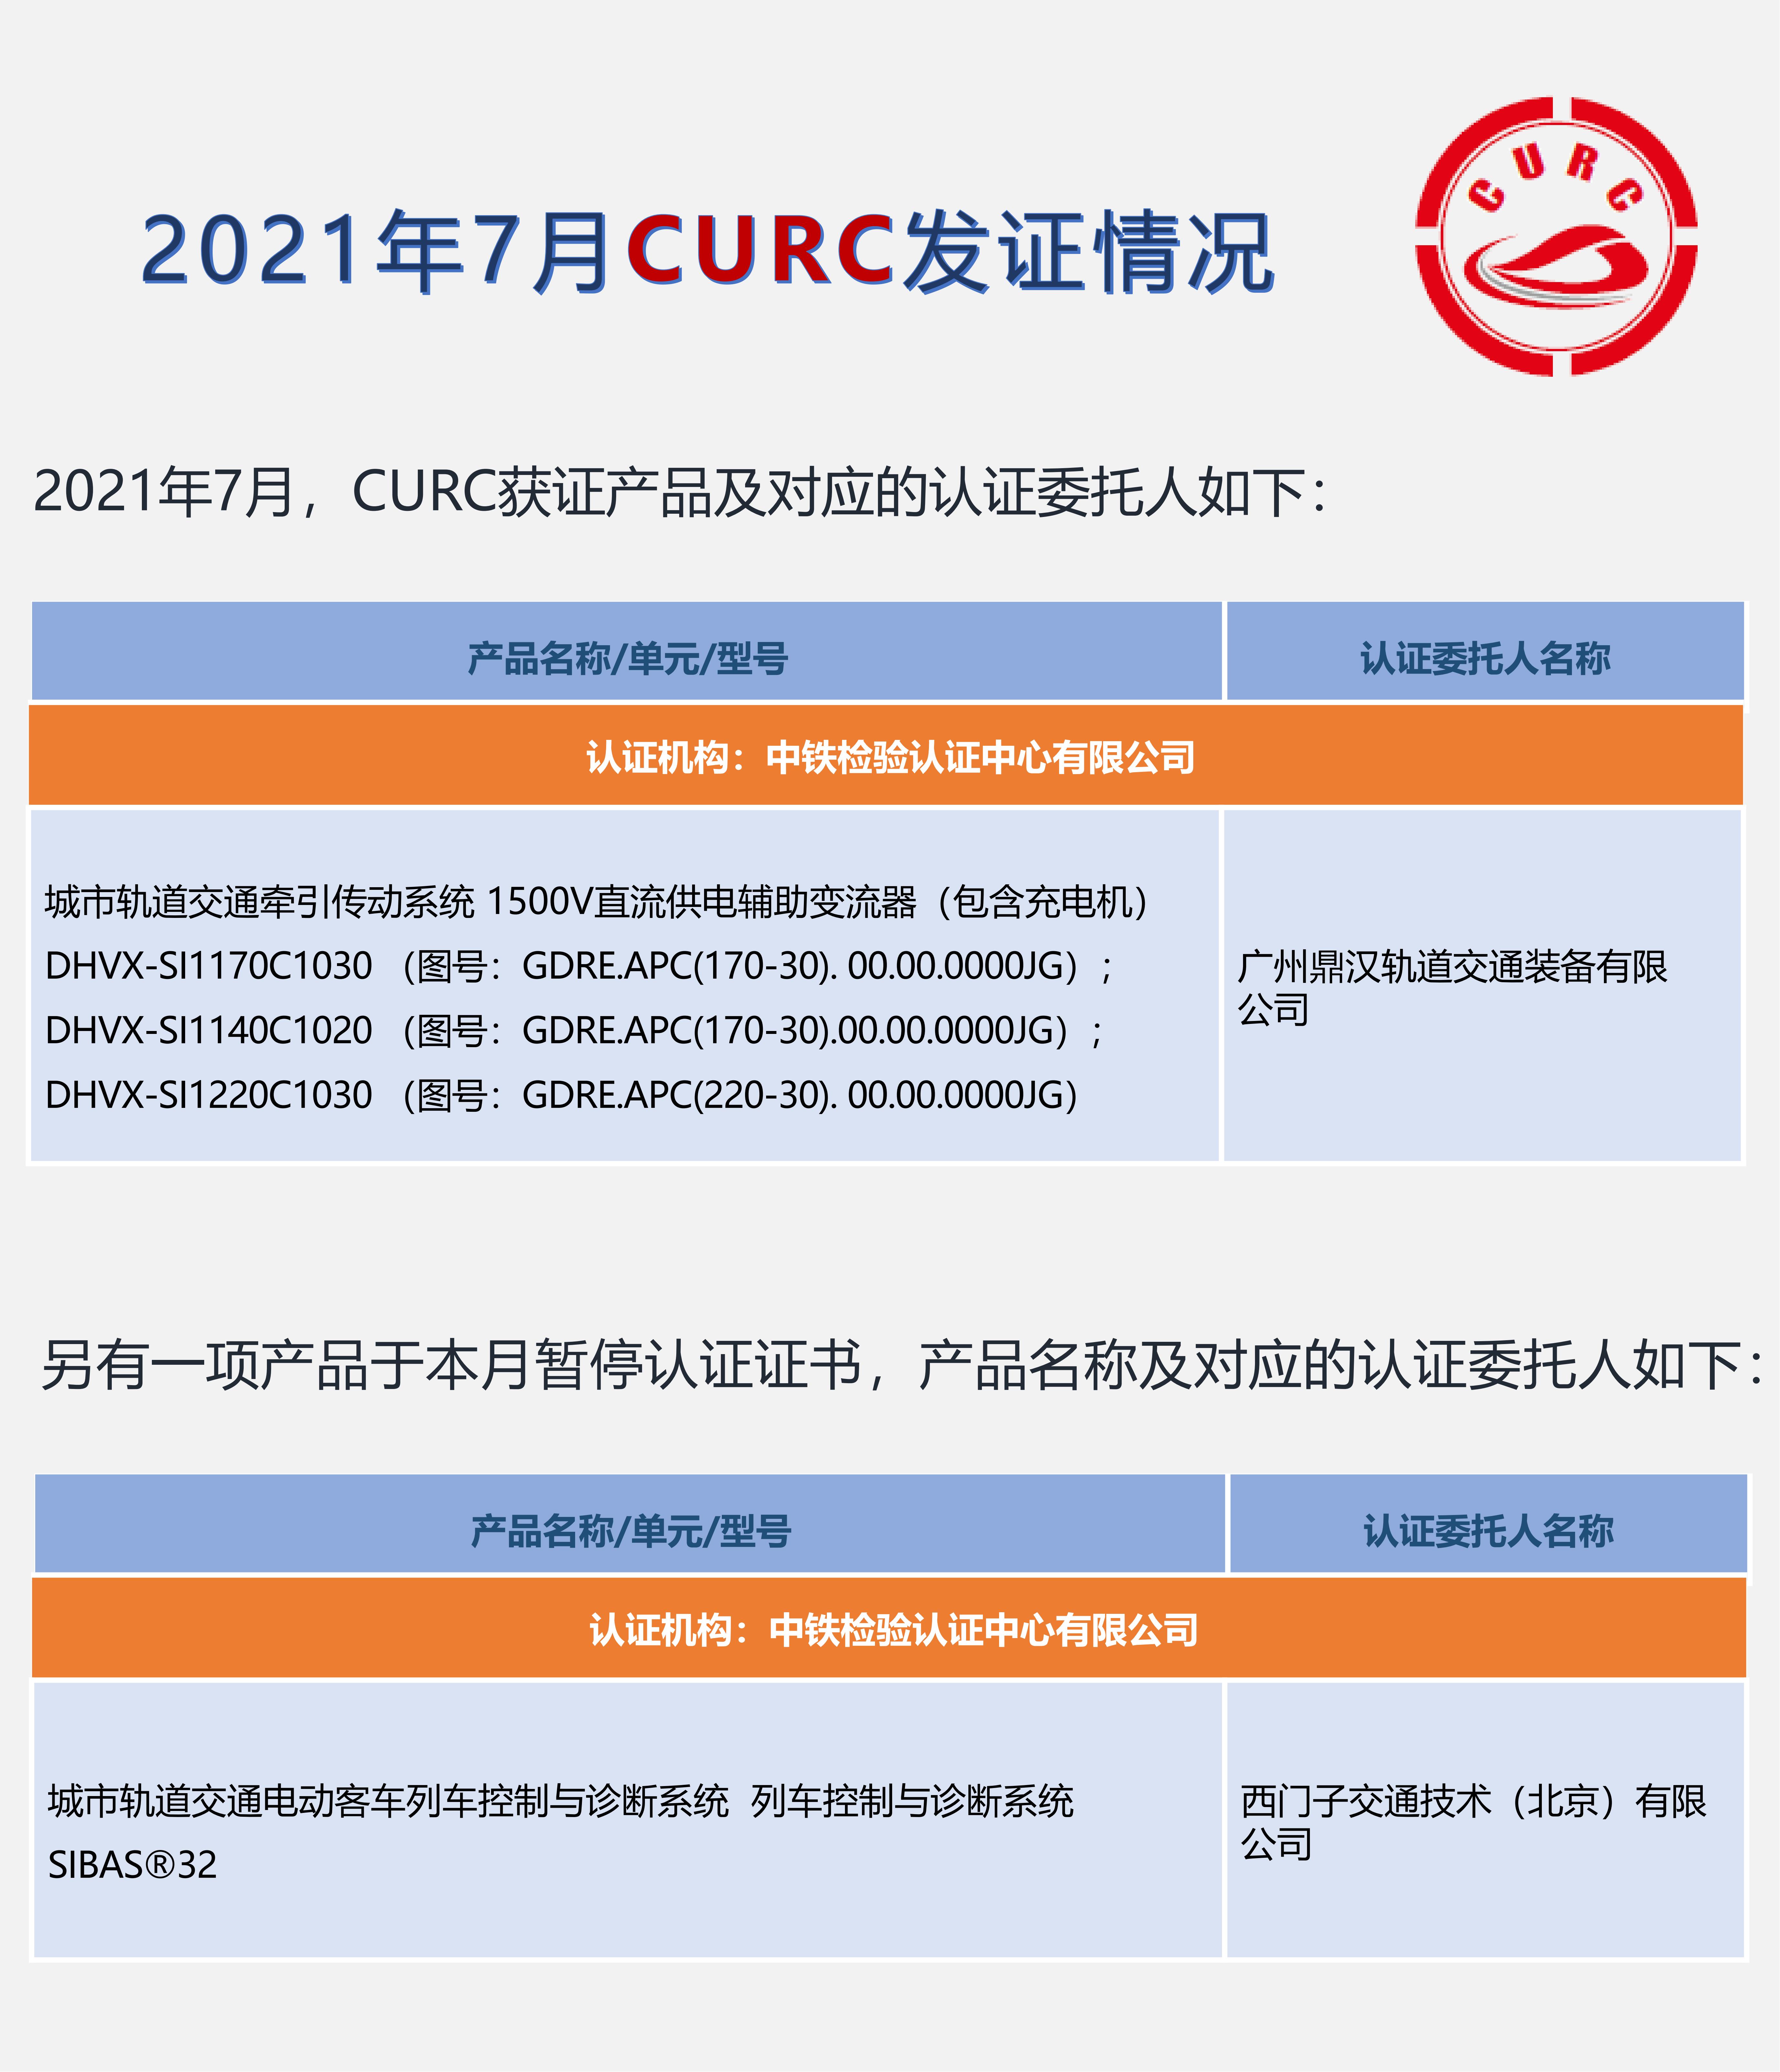 2021年7月CURC发证情况_00.jpg